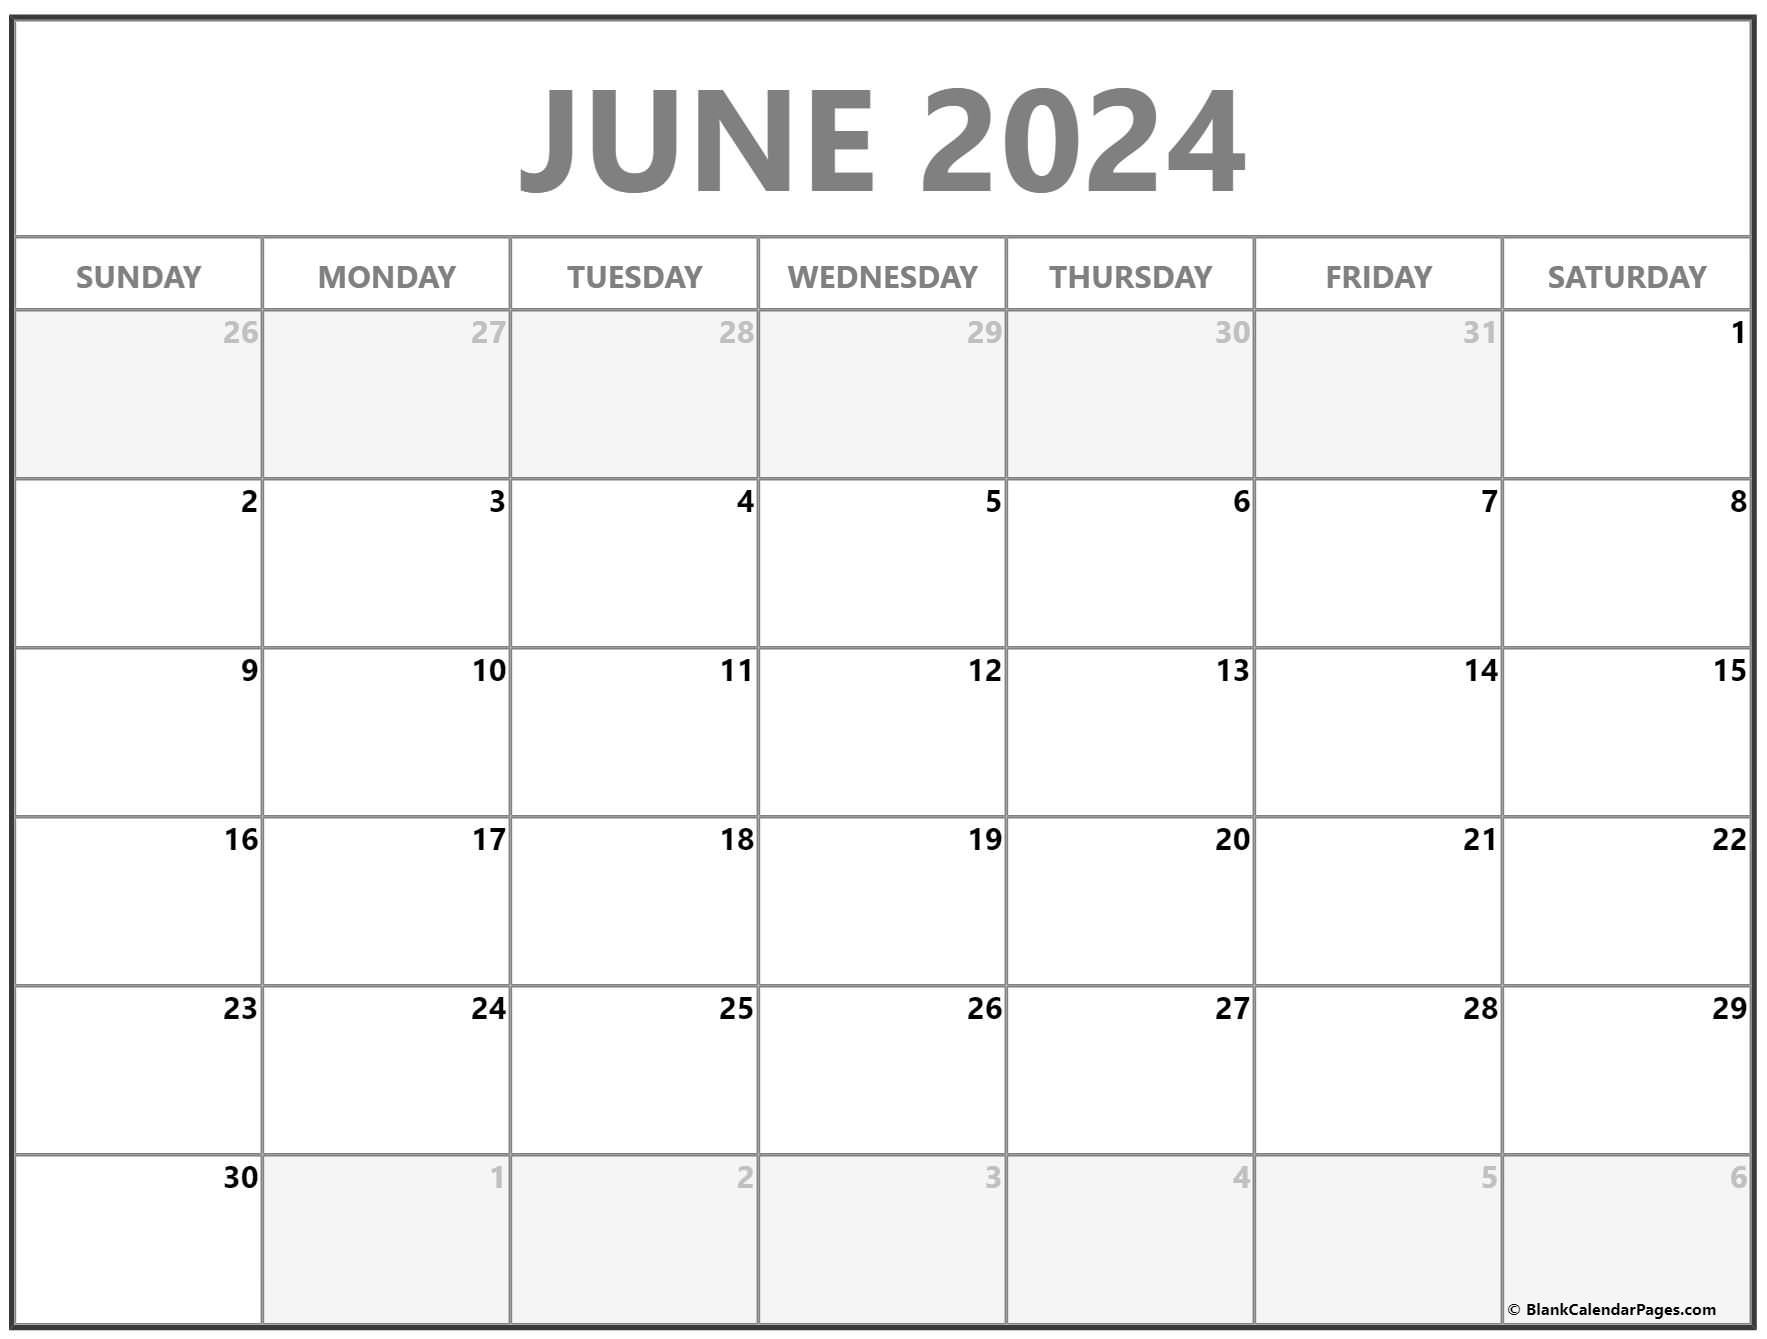 Free Printable Calendar June 2022 June 2022 Calendar | Free Printable Calendar Templates